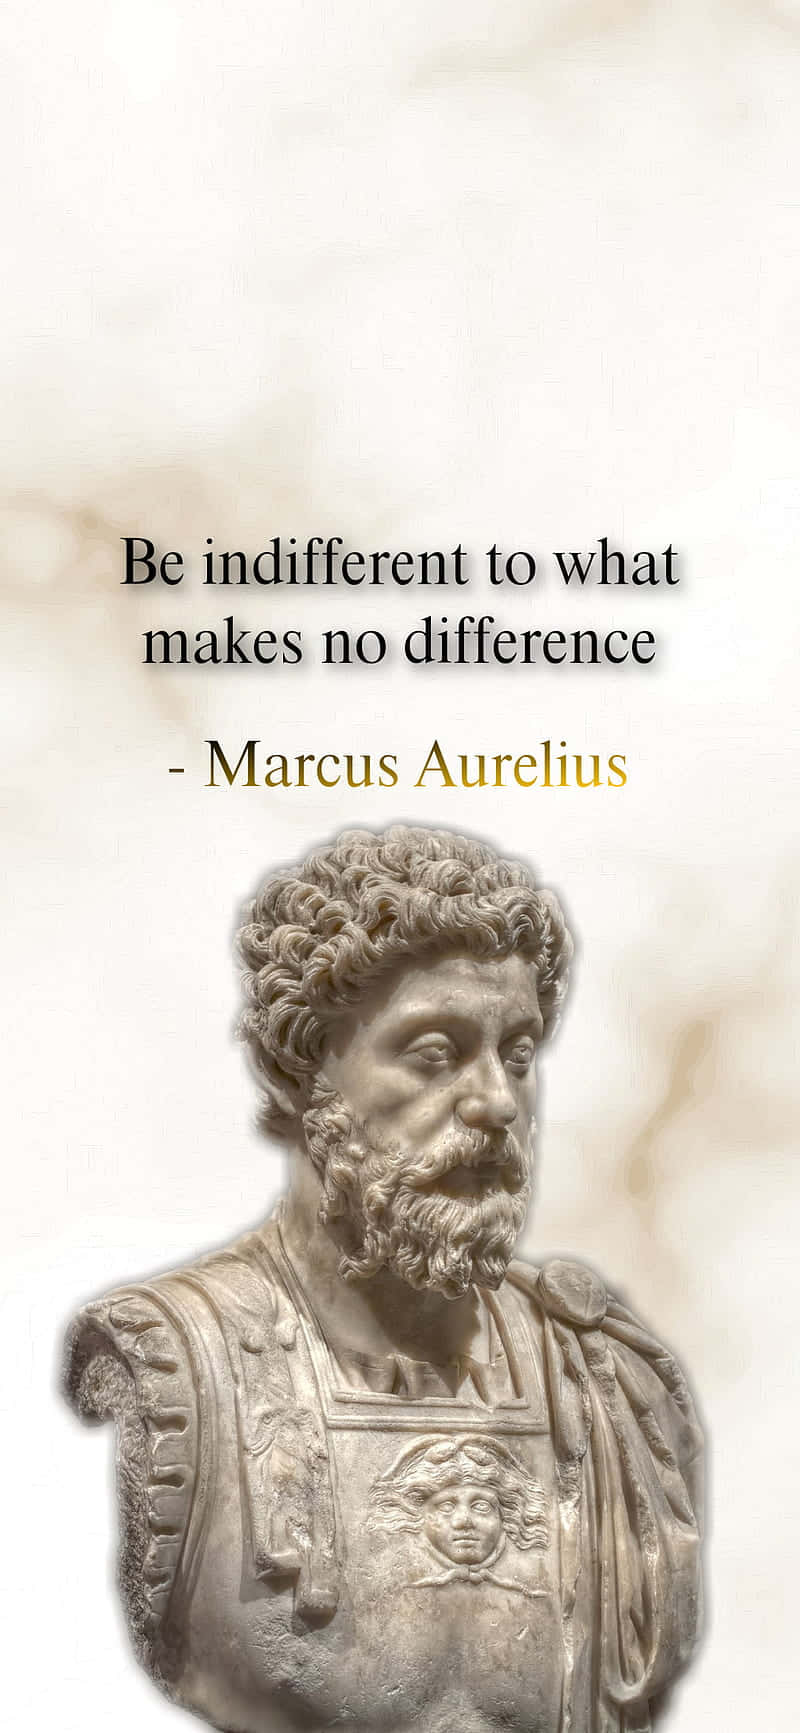 Marcus Aurelius Indifference Quote Wallpaper